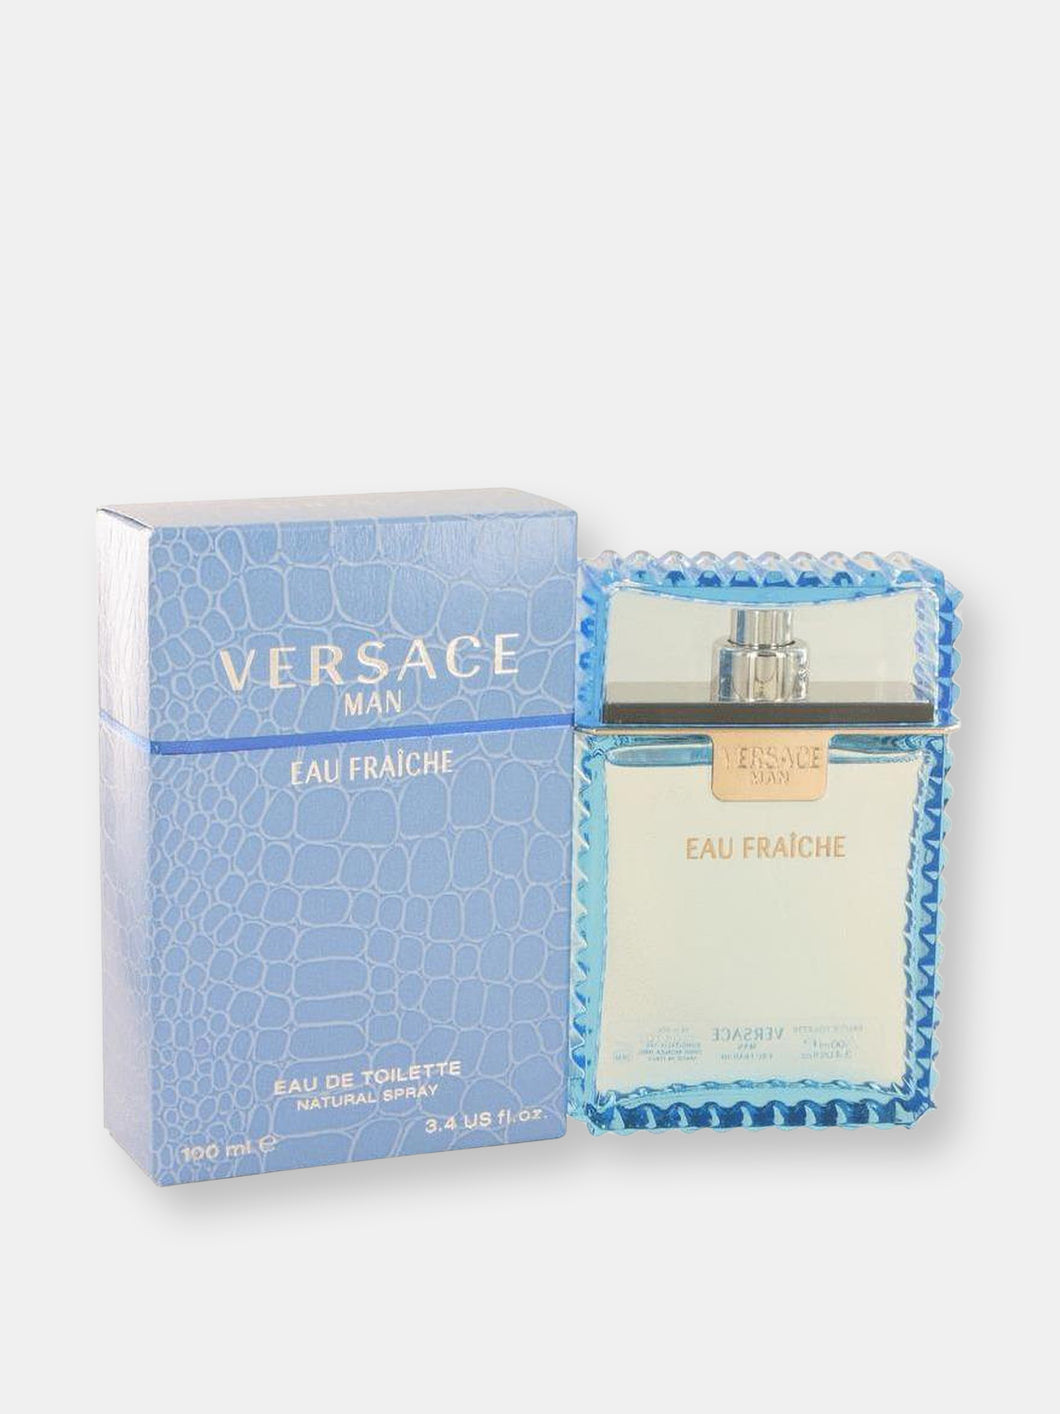 Versace Man by Versace Eau Fraiche Eau De Toilette Spray (Blue) 3.4 oz